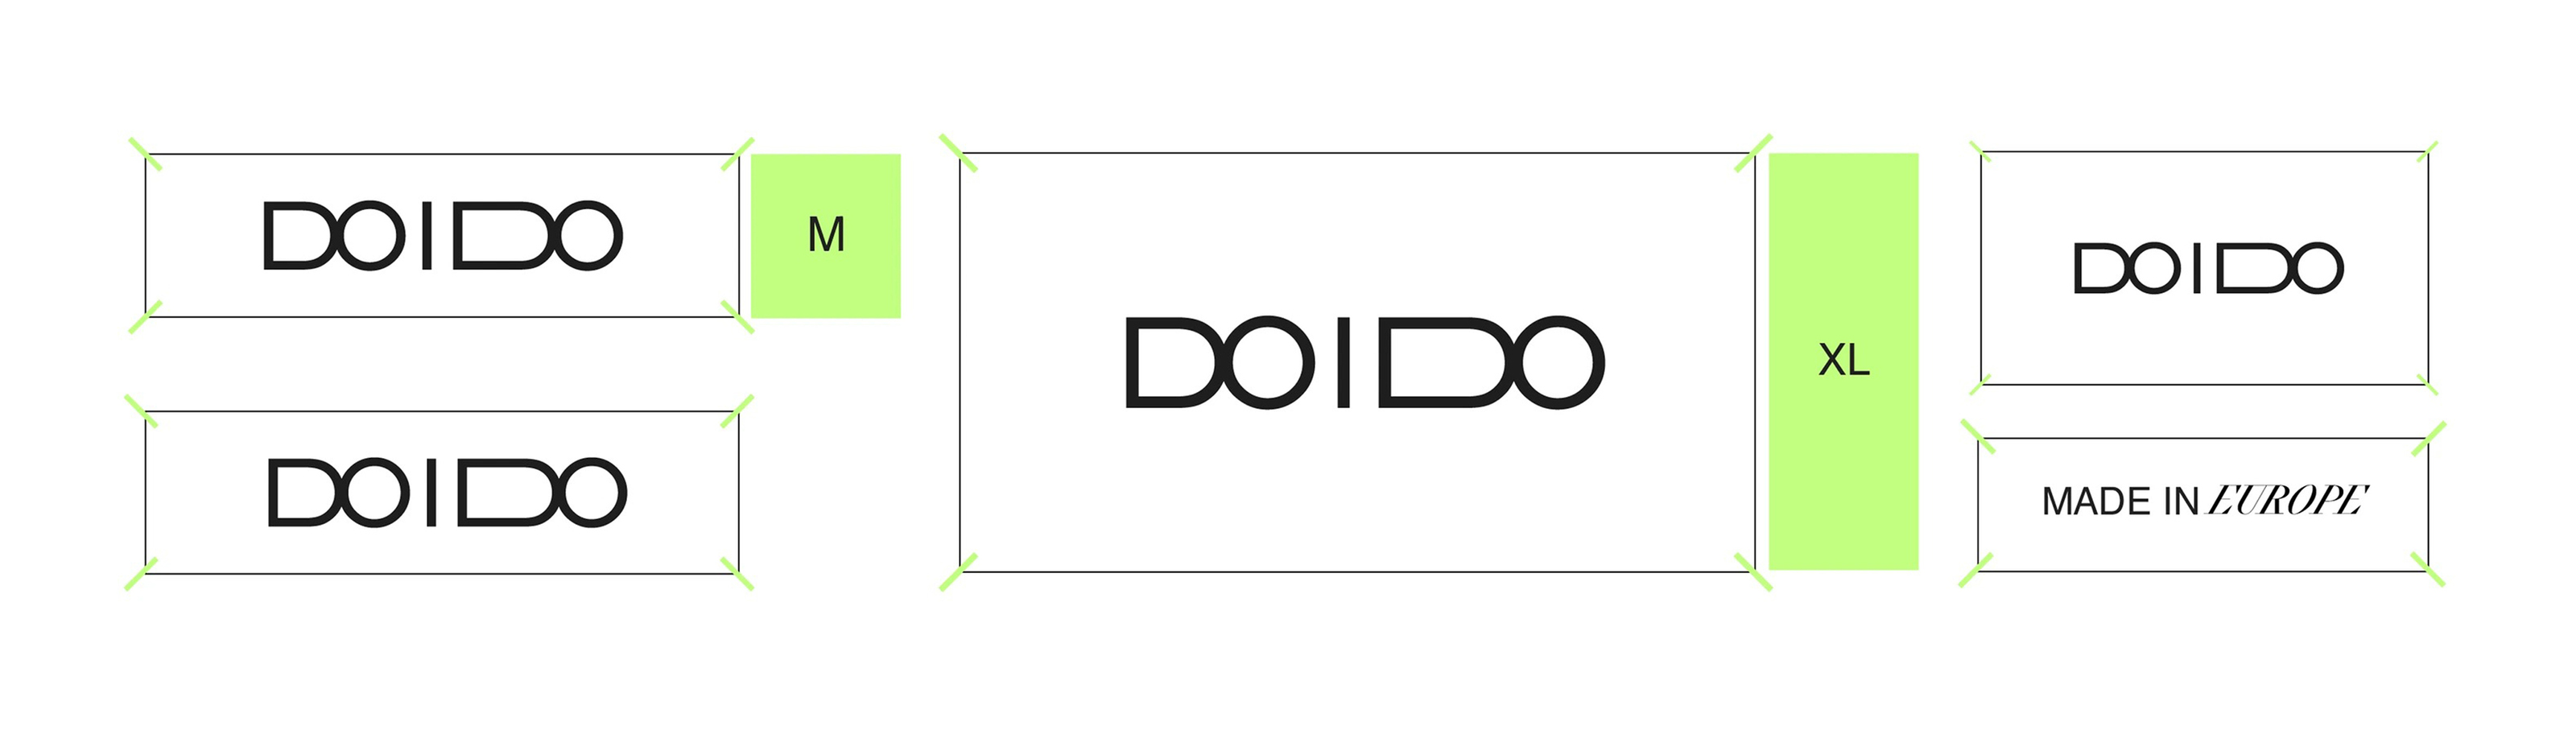 DO I DO — Изображение №10 — Брендинг, Графика на Dprofile